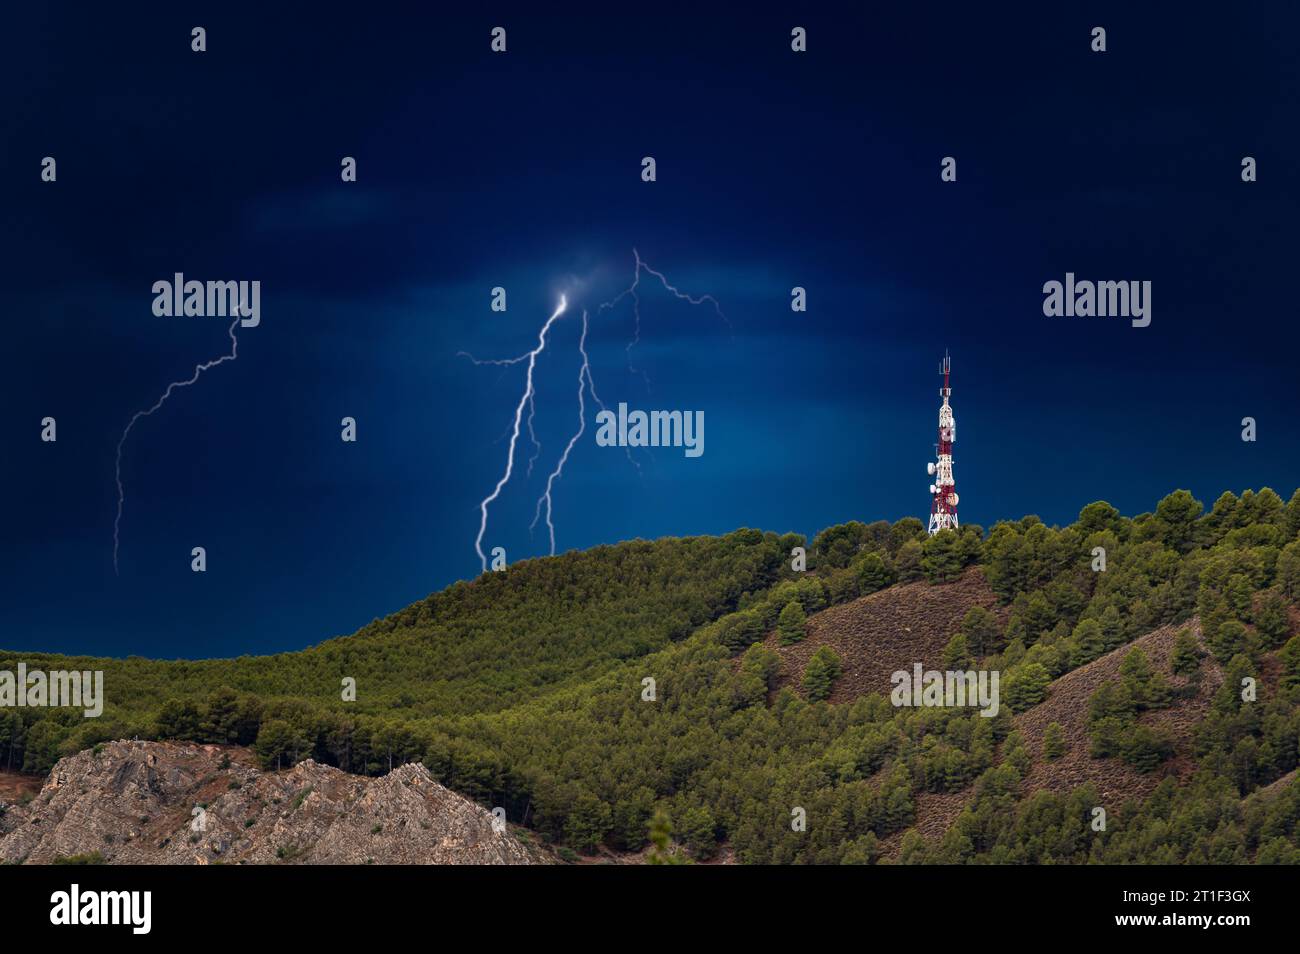 Tempête avec la foudre frappant à côté d'une grande antenne de télécommunications sur une colline avec des arbres Banque D'Images